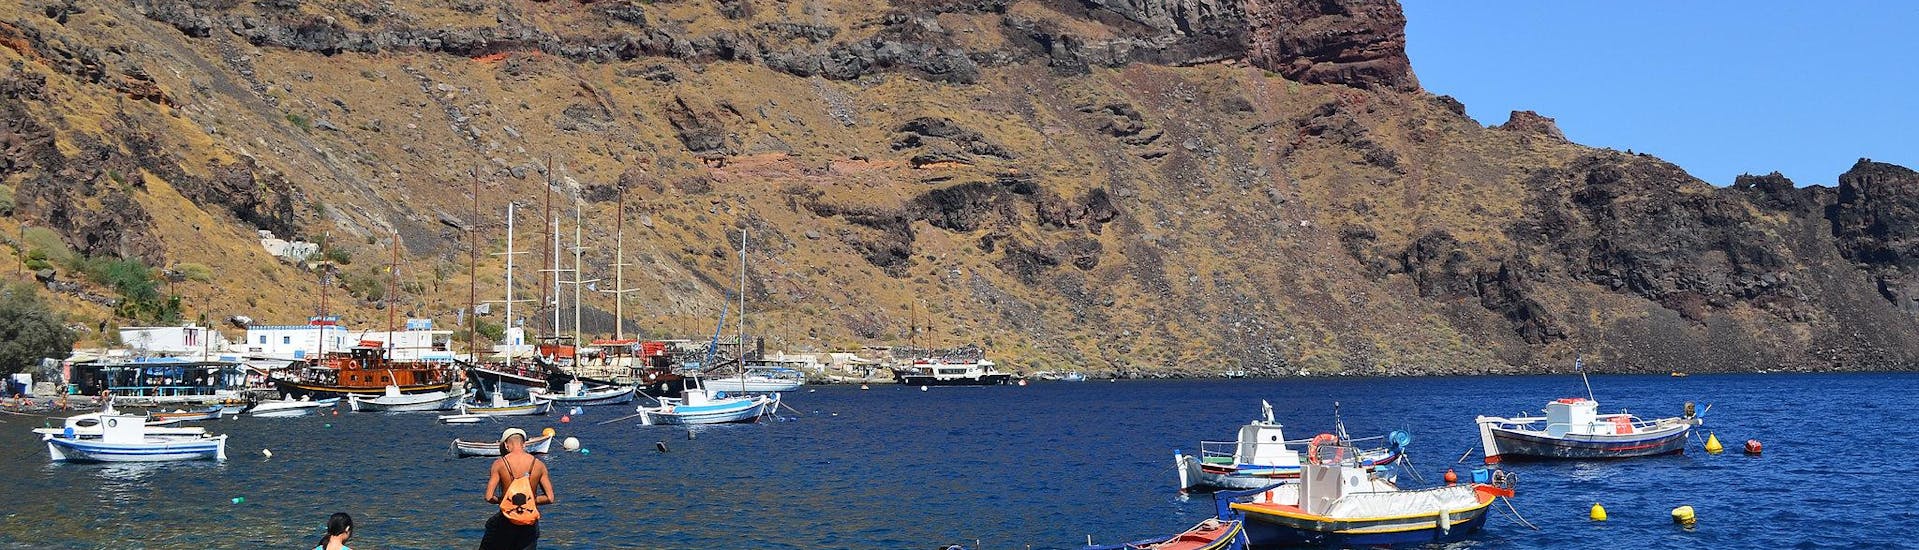 Alcune barche vicino alla costa durante la gita in barca all'isola di Therasia.